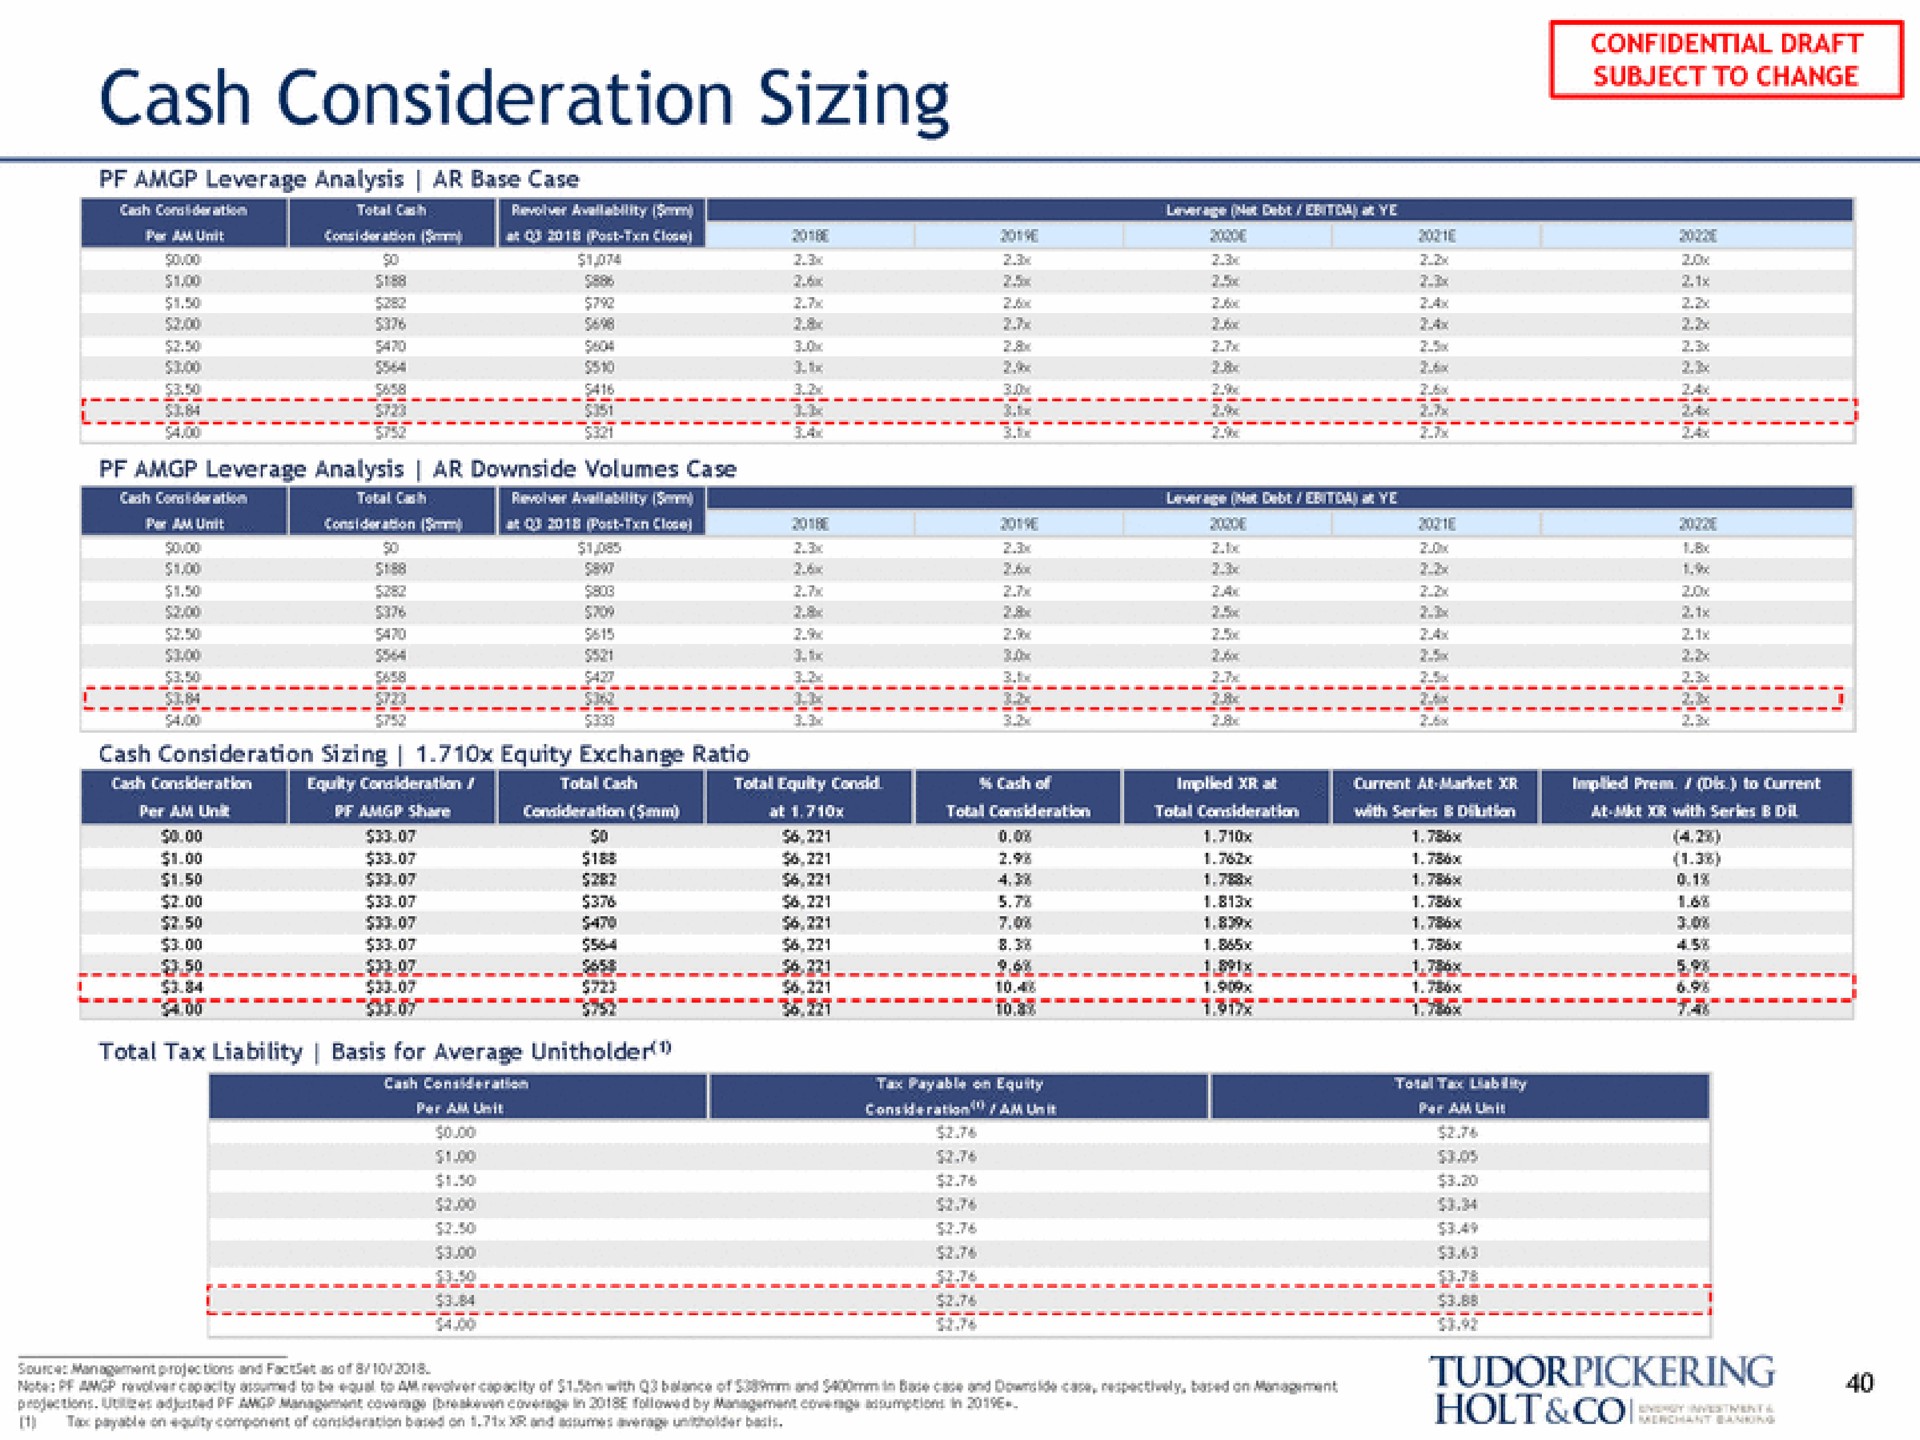 cash consideration sizing | Tudor, Pickering, Holt & Co